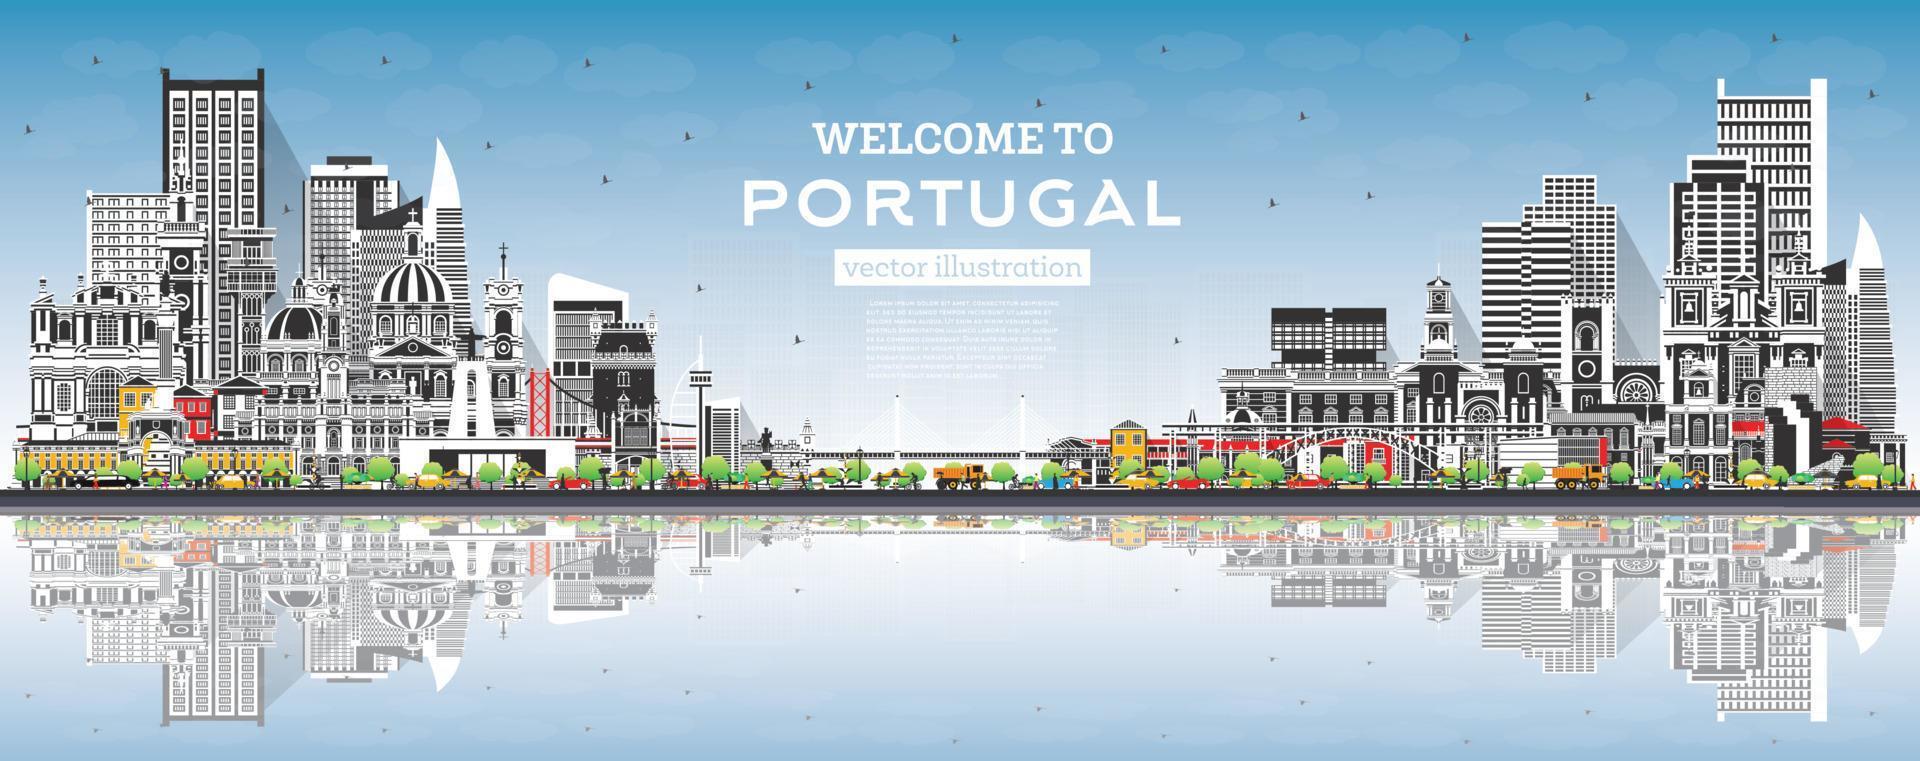 Välkommen till portugal. stad horisont med grå byggnader, blå himmel och reflektioner. vektor